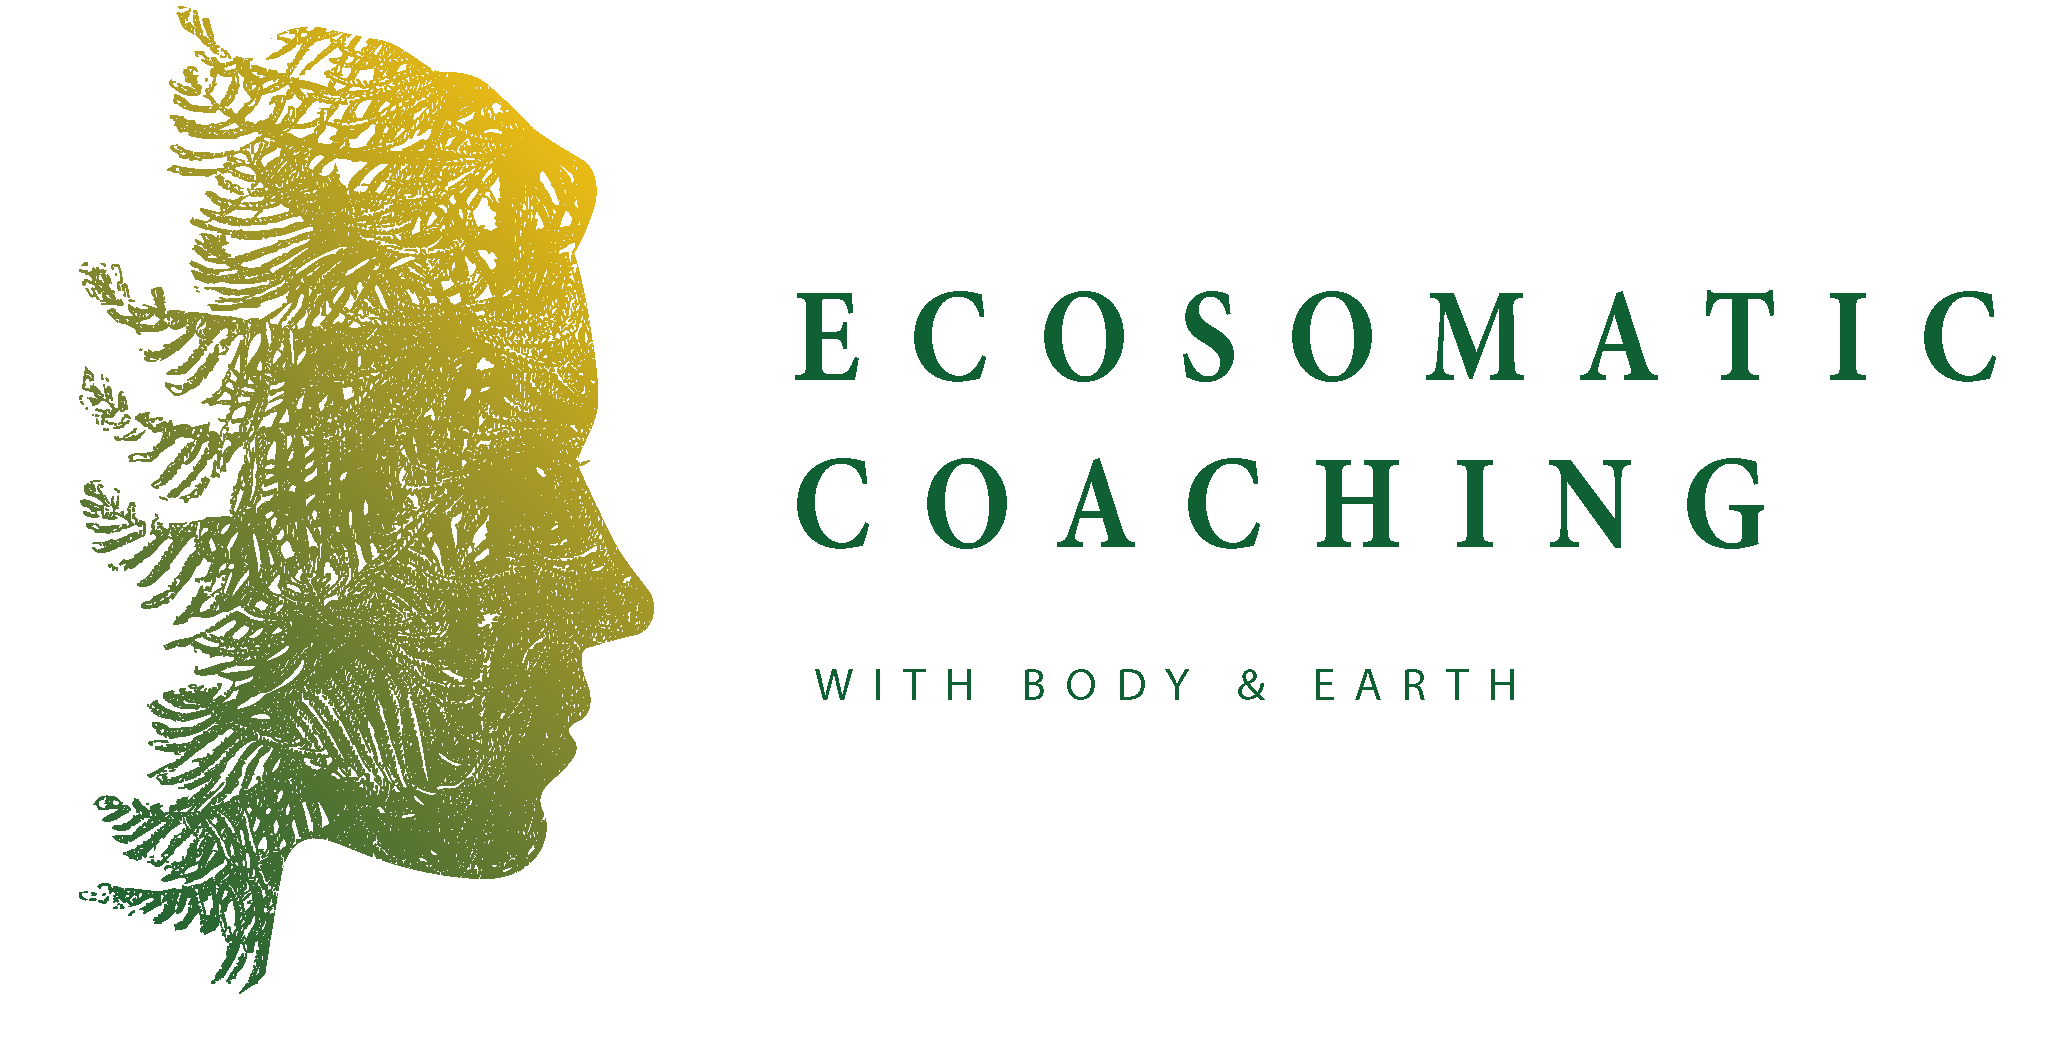 Ecosomatic Coaching